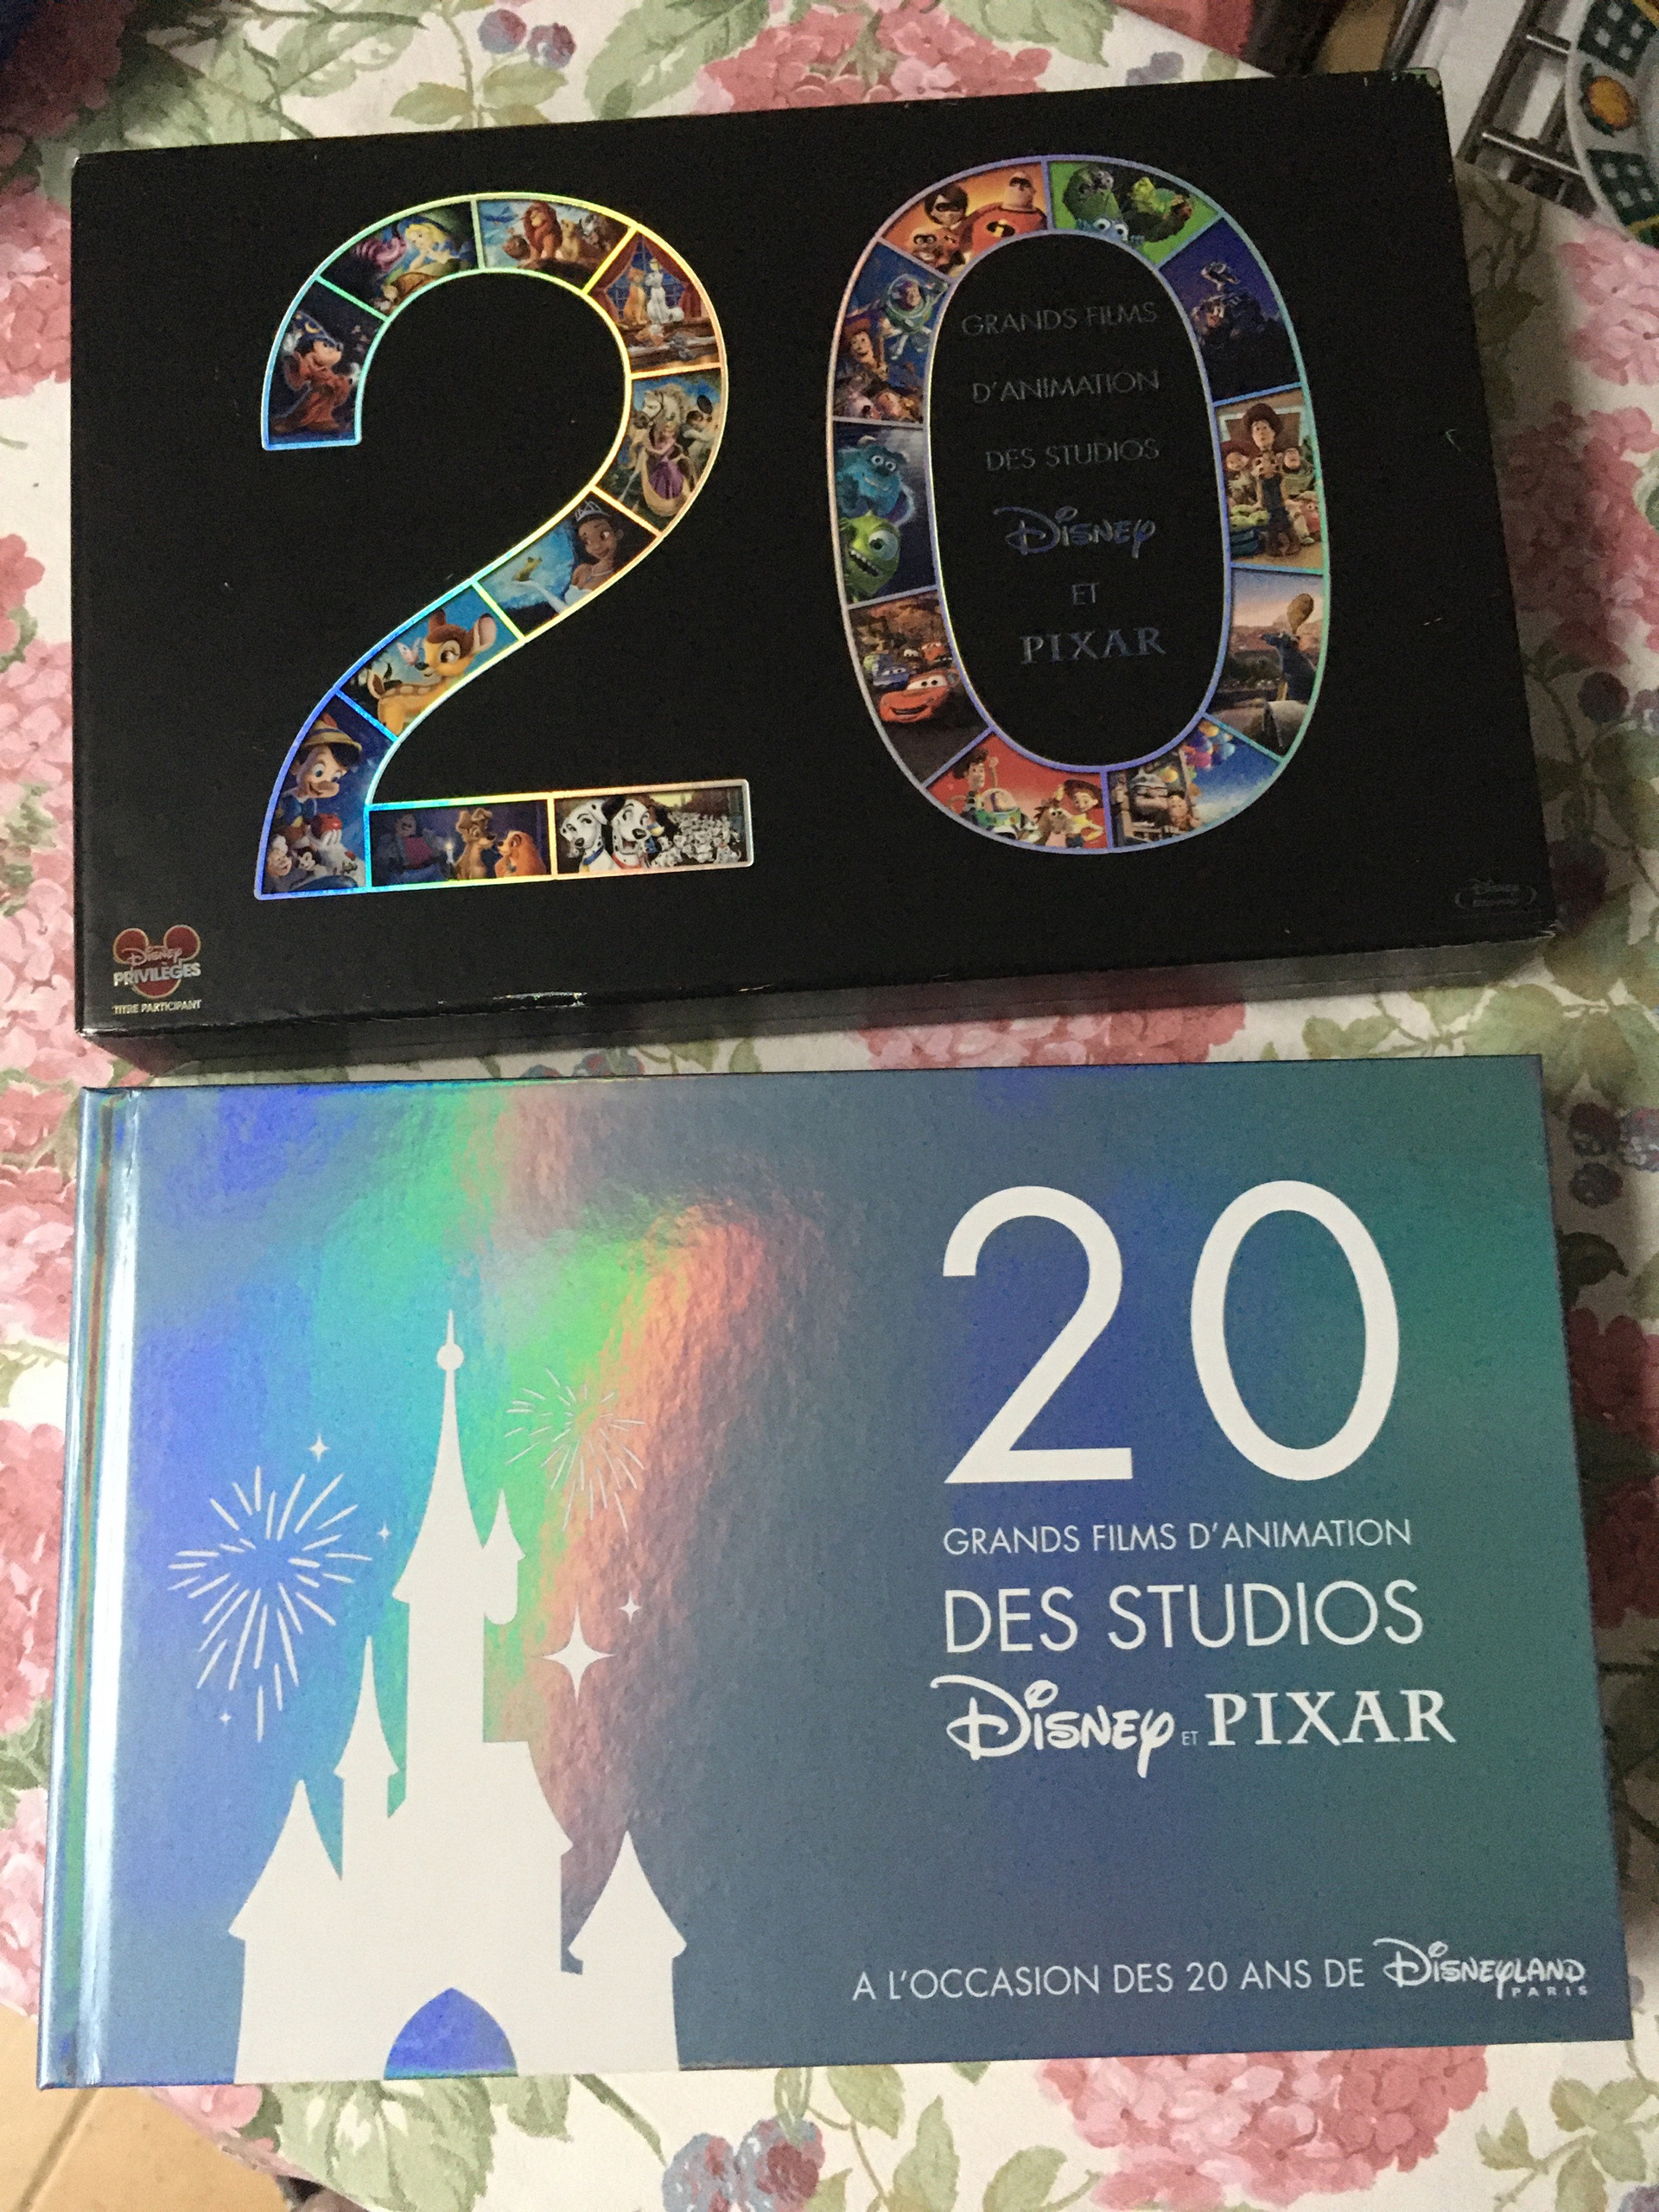  Coffret Disney-Pixar 20 films dont Wall-e, Alice au Pays des  merveilles, Bambi, Fantasia, Les 101 dalmatiens, Les Aristochats, La Belle  et le clochard [Blu-ray]: DVD et Blu-ray: Disney